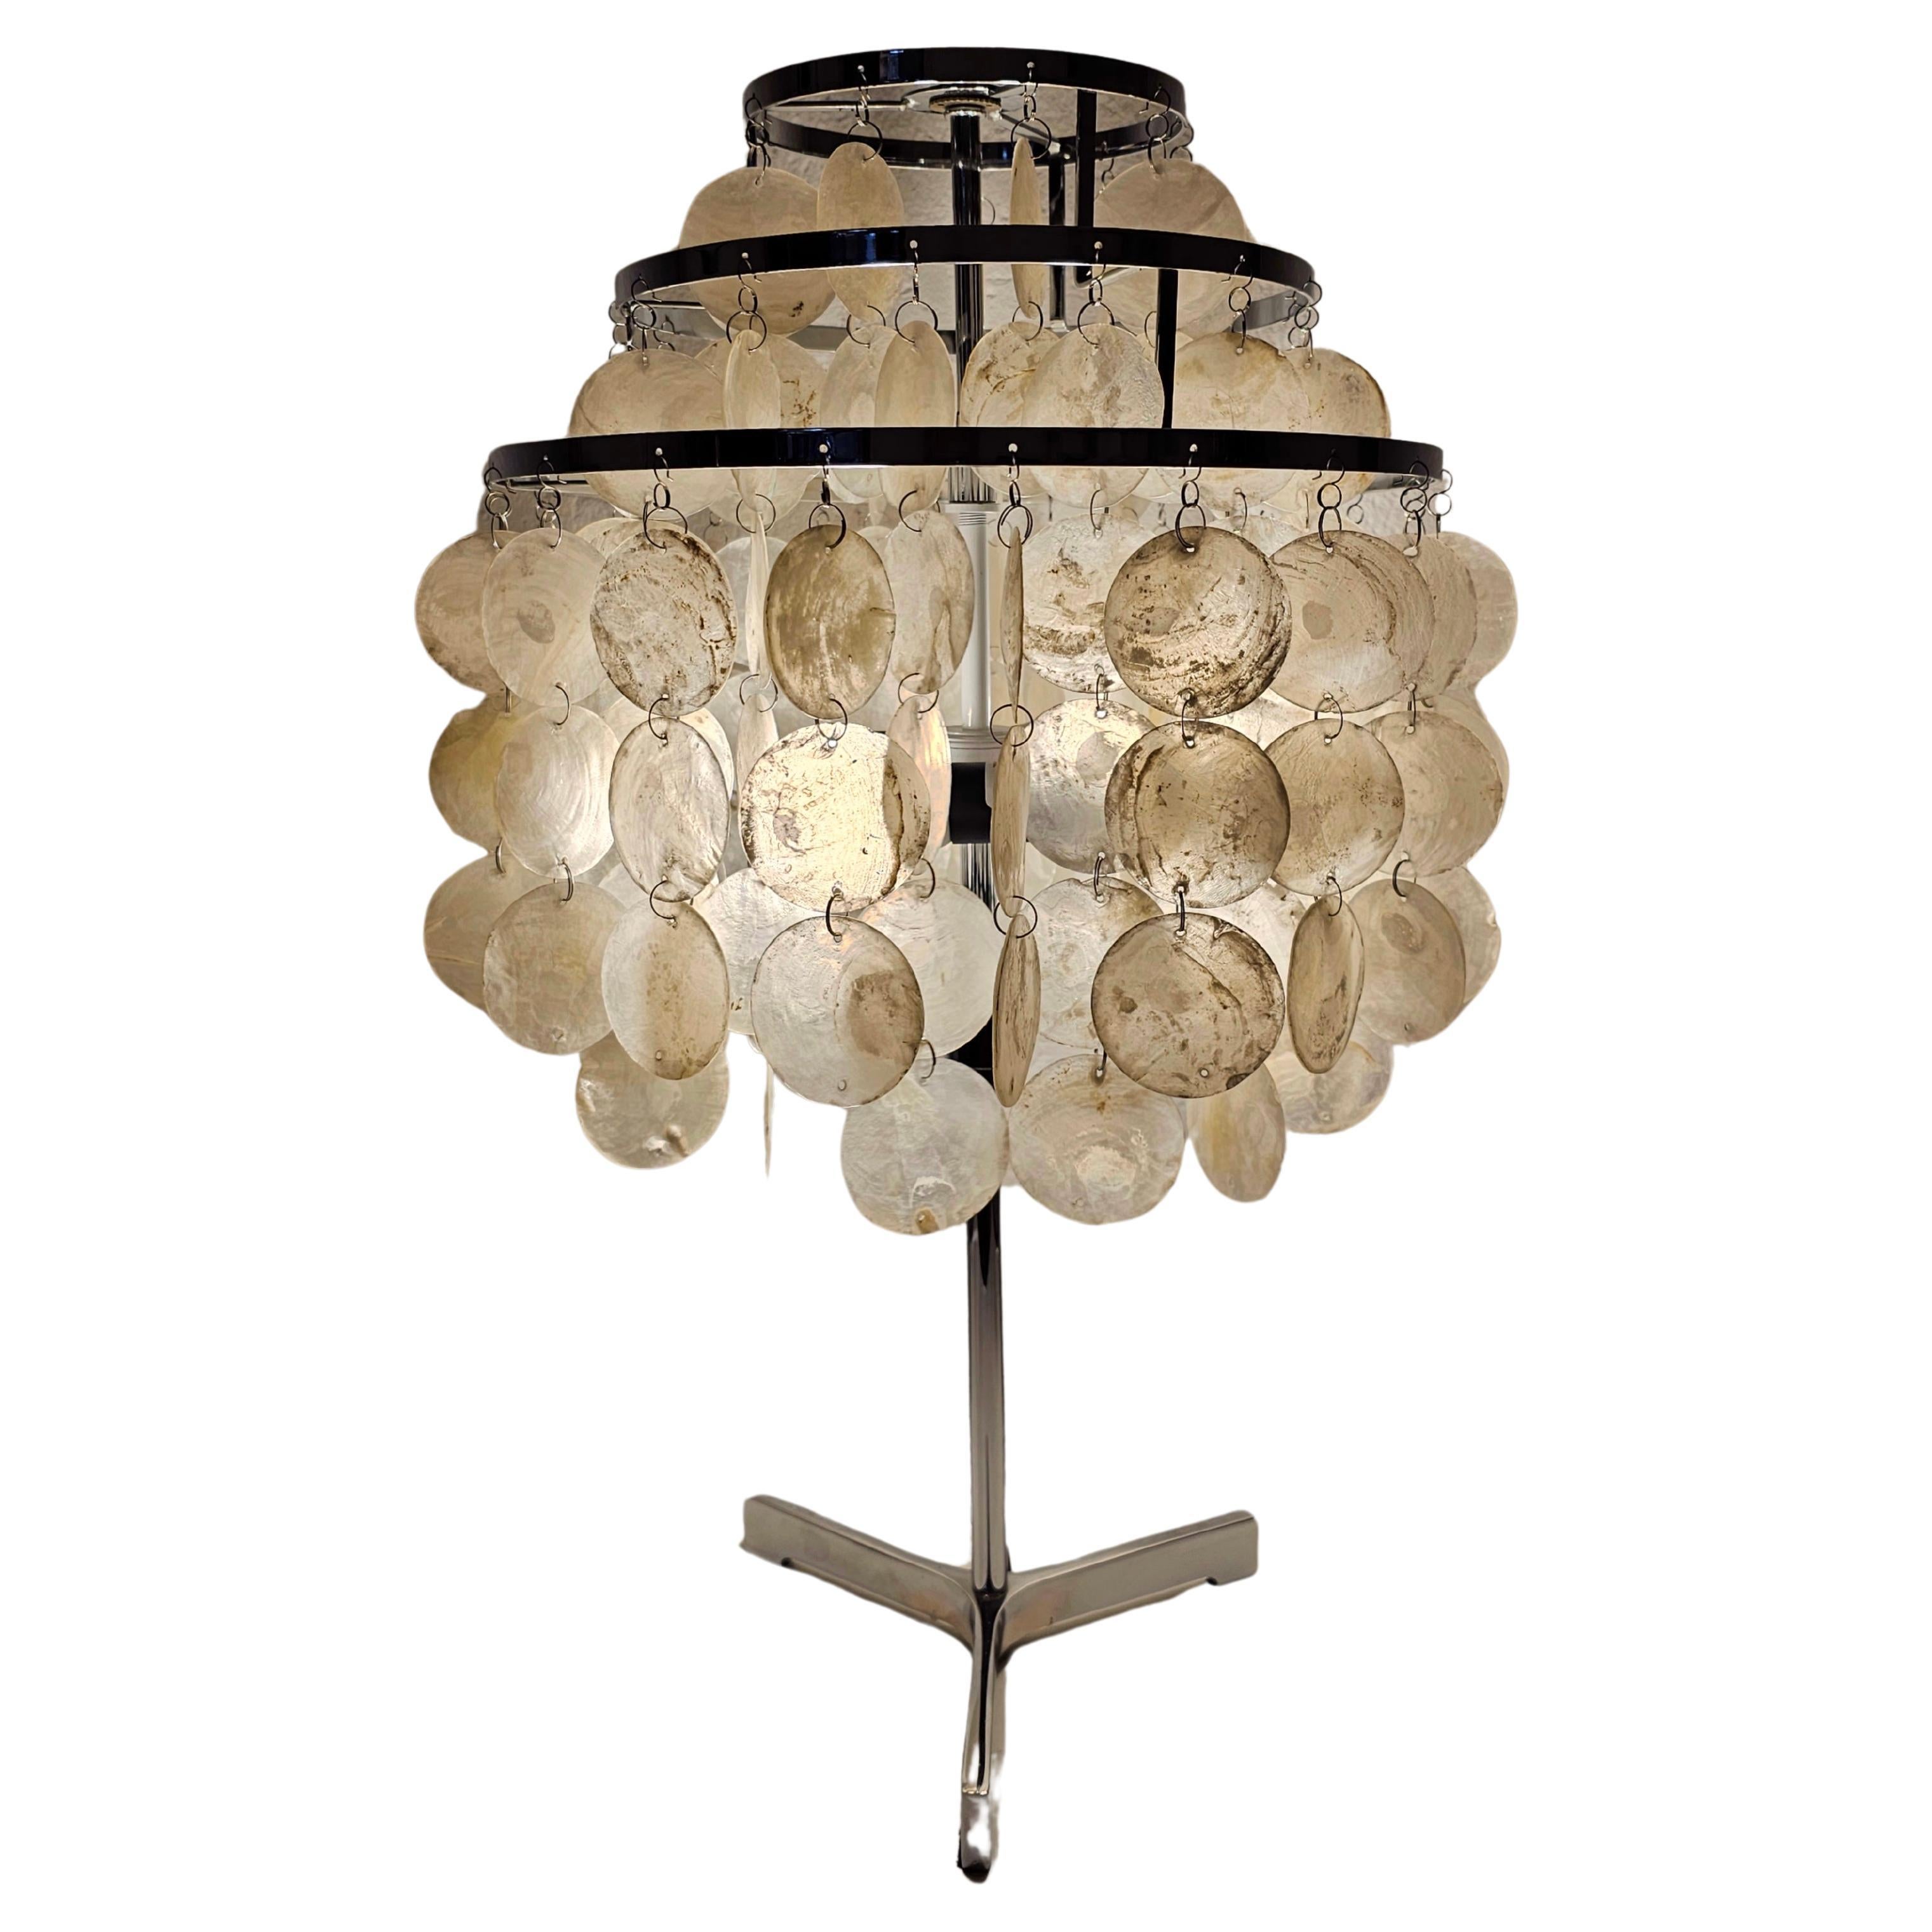 Lampe de table Capiz dans le style de la lampe fantastique Verner Panton, États-Unis, années 1980